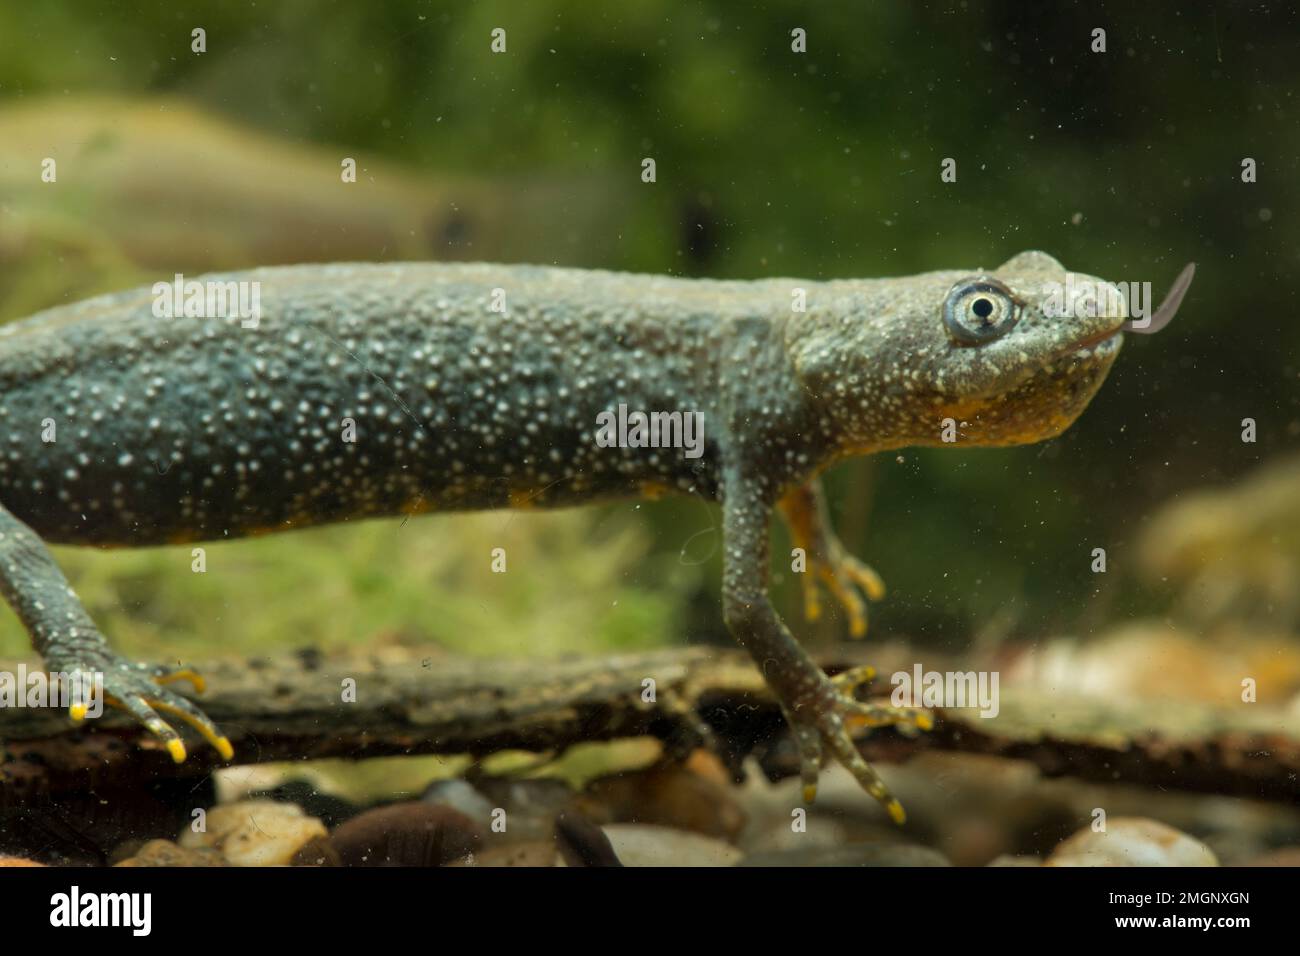 Hembra adulta de Newt crestada (Triturus cristatus) comiendo a su presa: Un renaculo de rana europea en un estanque, la meseta de Ecrouves, Lorena, Francia Foto de stock